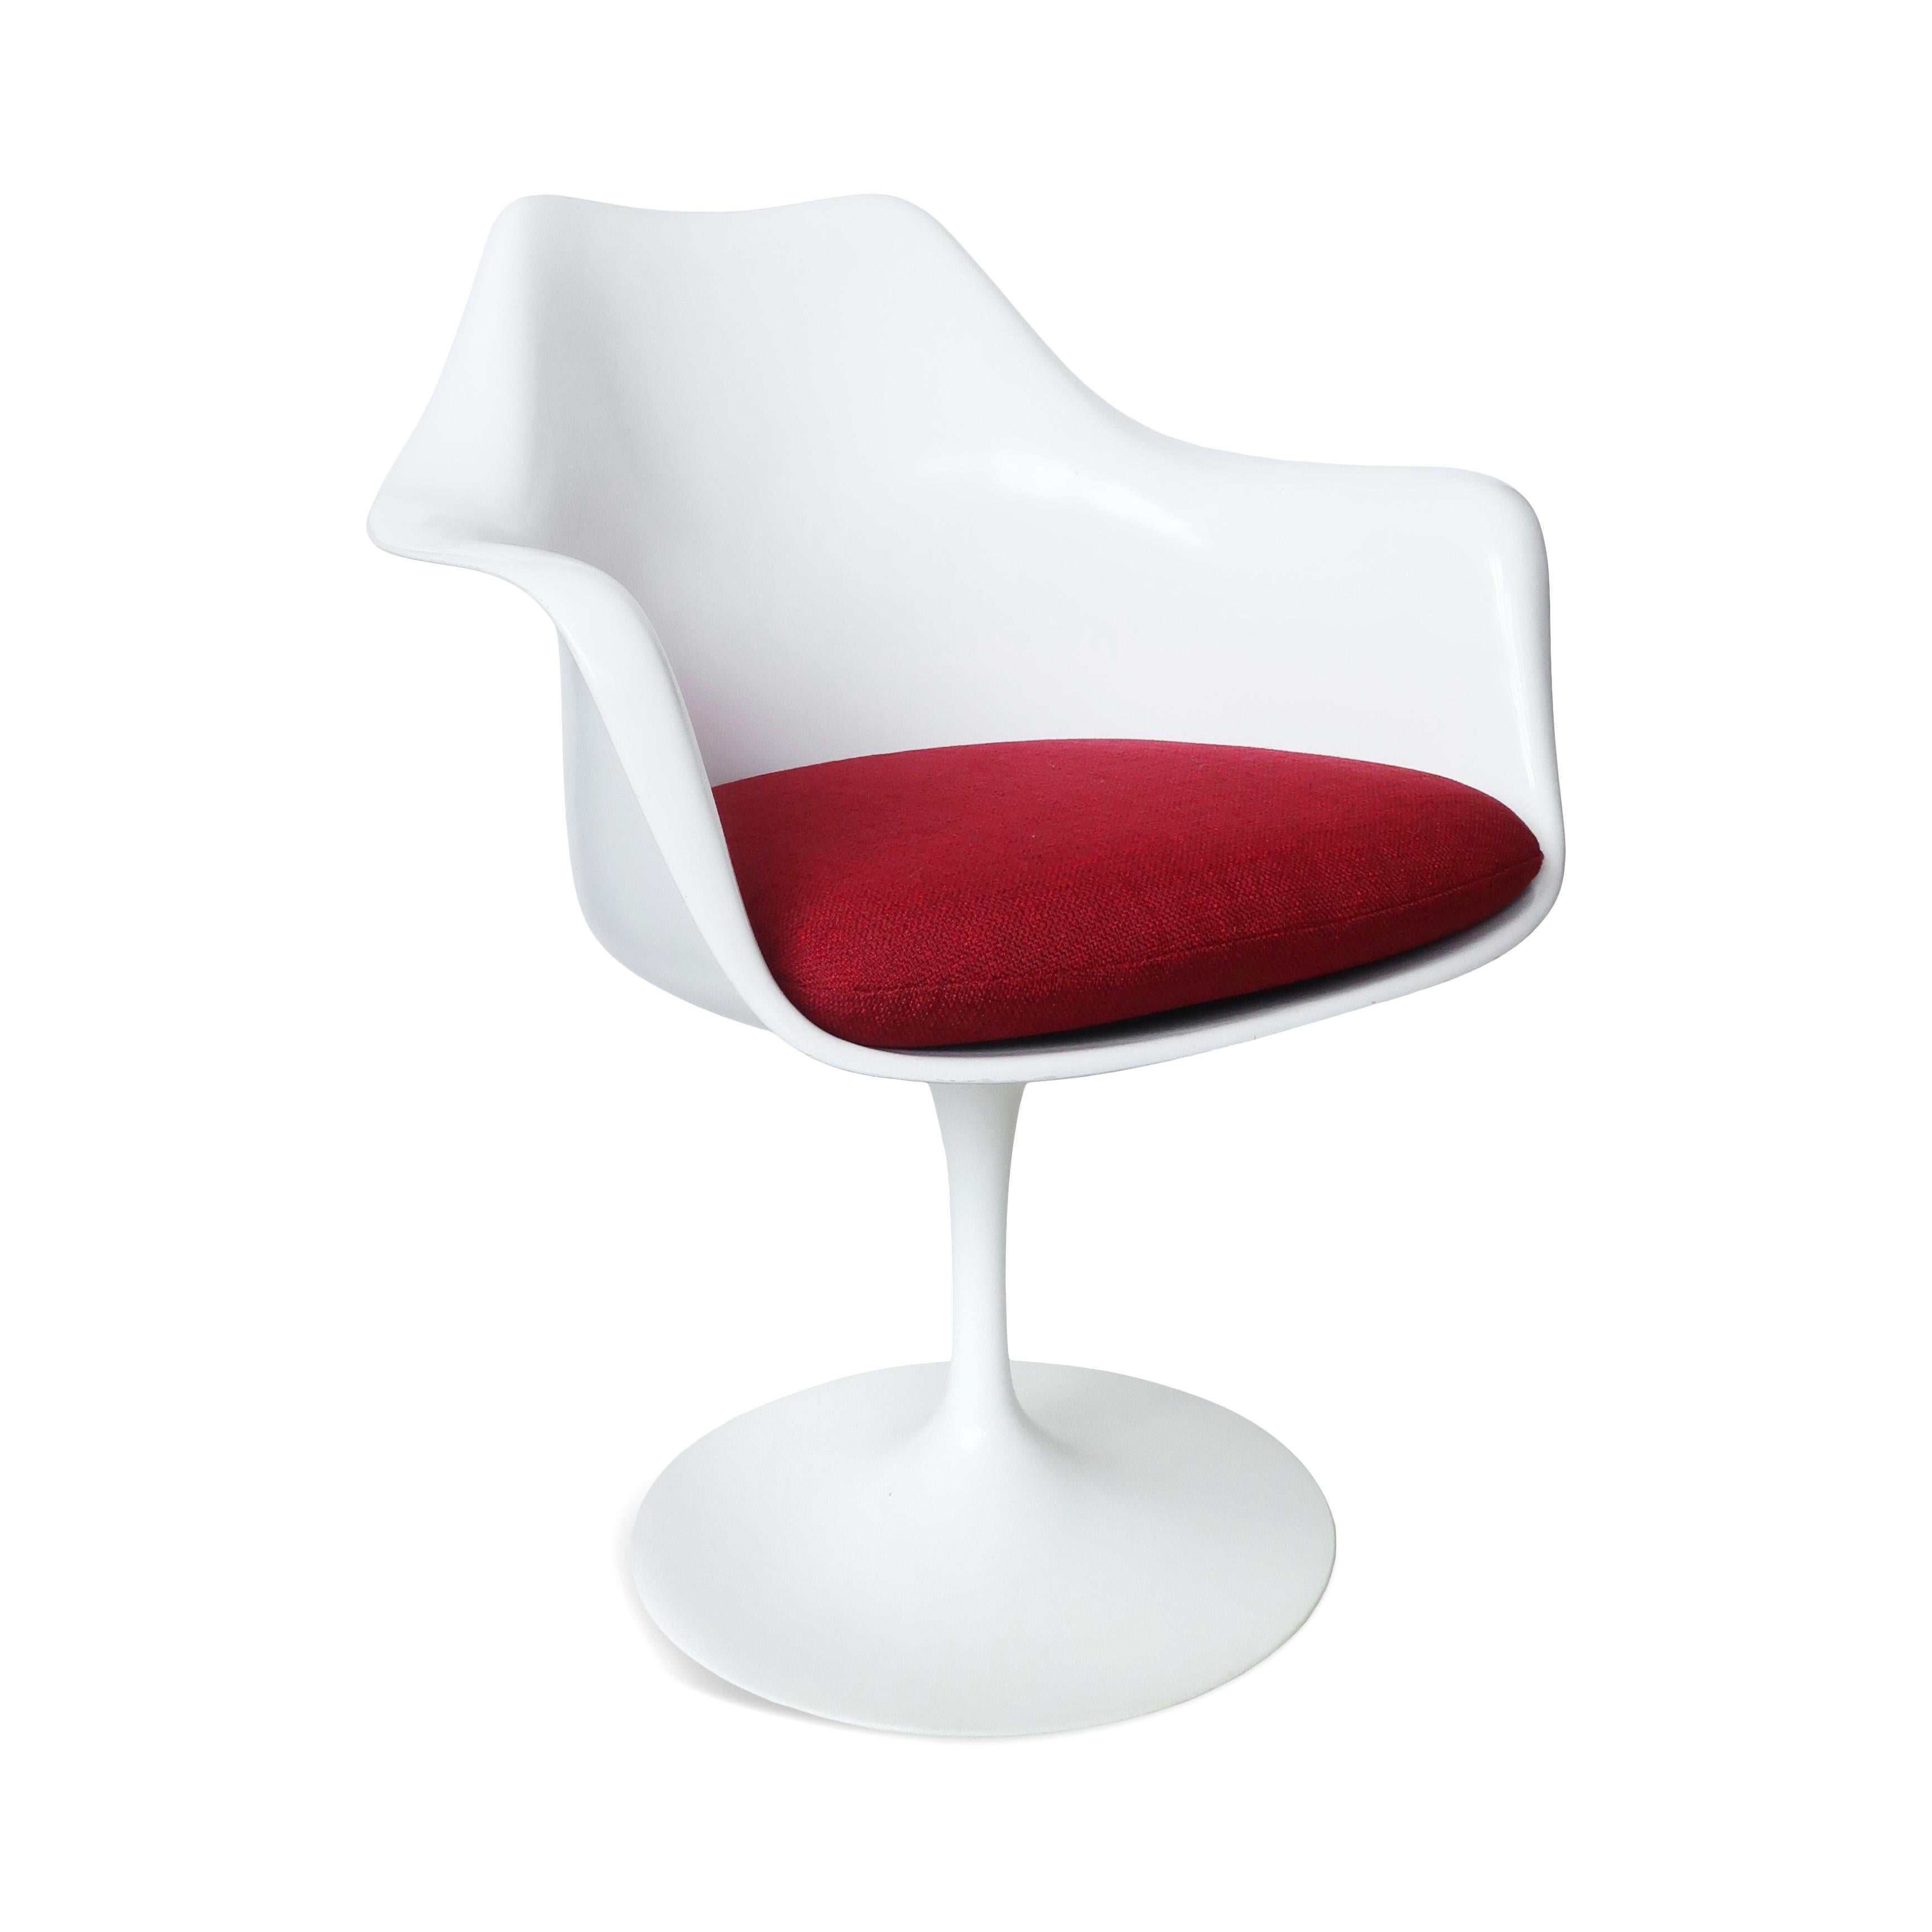 Der Tulpensessel von Knoll ist ein Klassiker des modernen Designs, der Eleganz und Funktionalität vereint. Er wurde 1957 von Eero Saarinen entworfen.  Er zeichnet sich durch eine schlanke und skulpturale Form aus, die das Durcheinander von Beinen